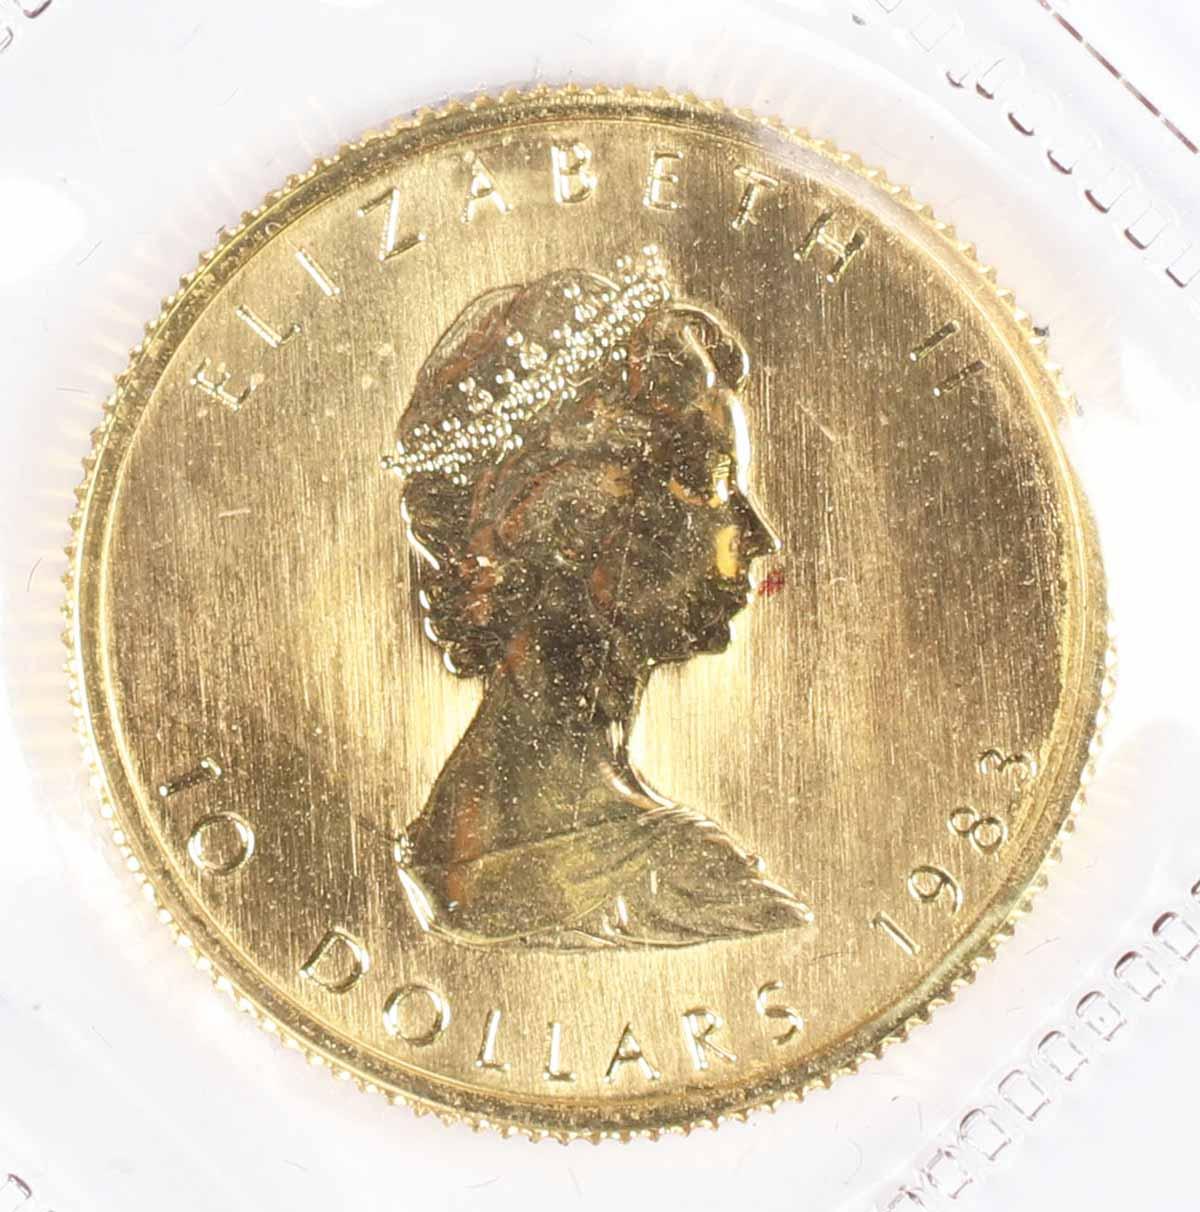 1983 1/4-Oz $10 Fine Gold Canada Maple Leaf